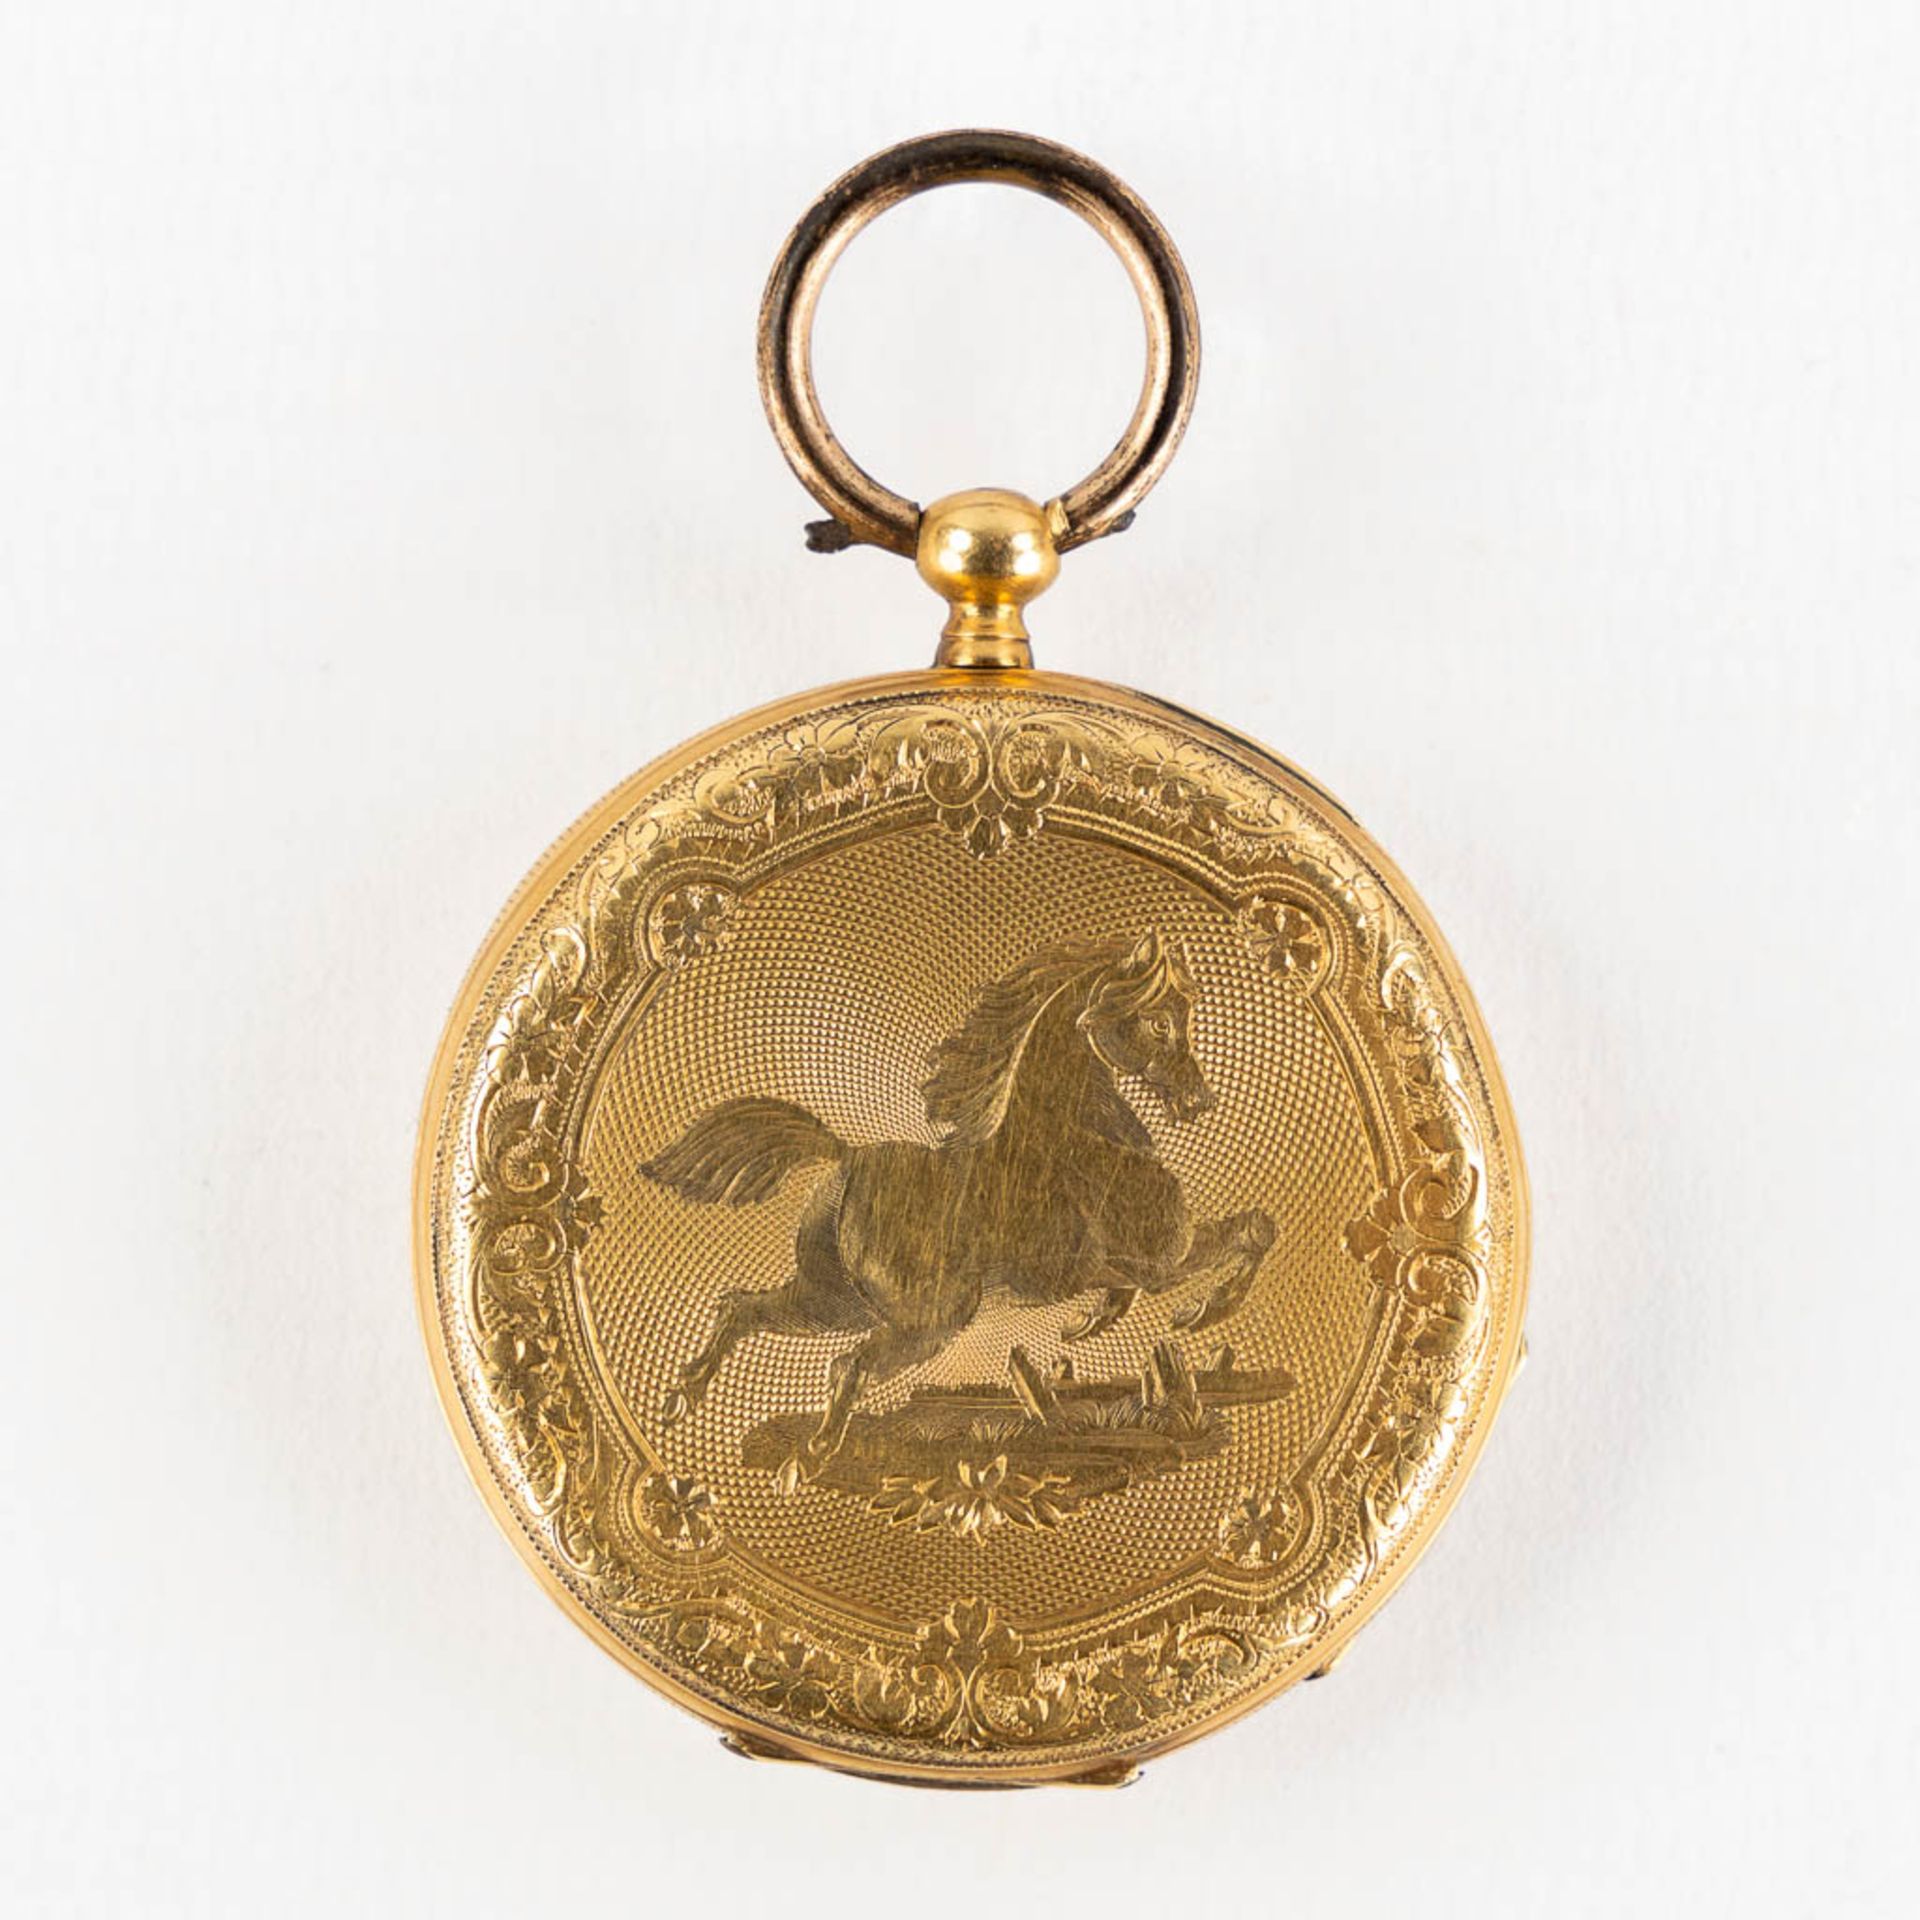 An antique pocket watch, 18kt yellow gold. Guioche image of a running horse. (W:4,3 x H:6,3 cm) - Bild 9 aus 15